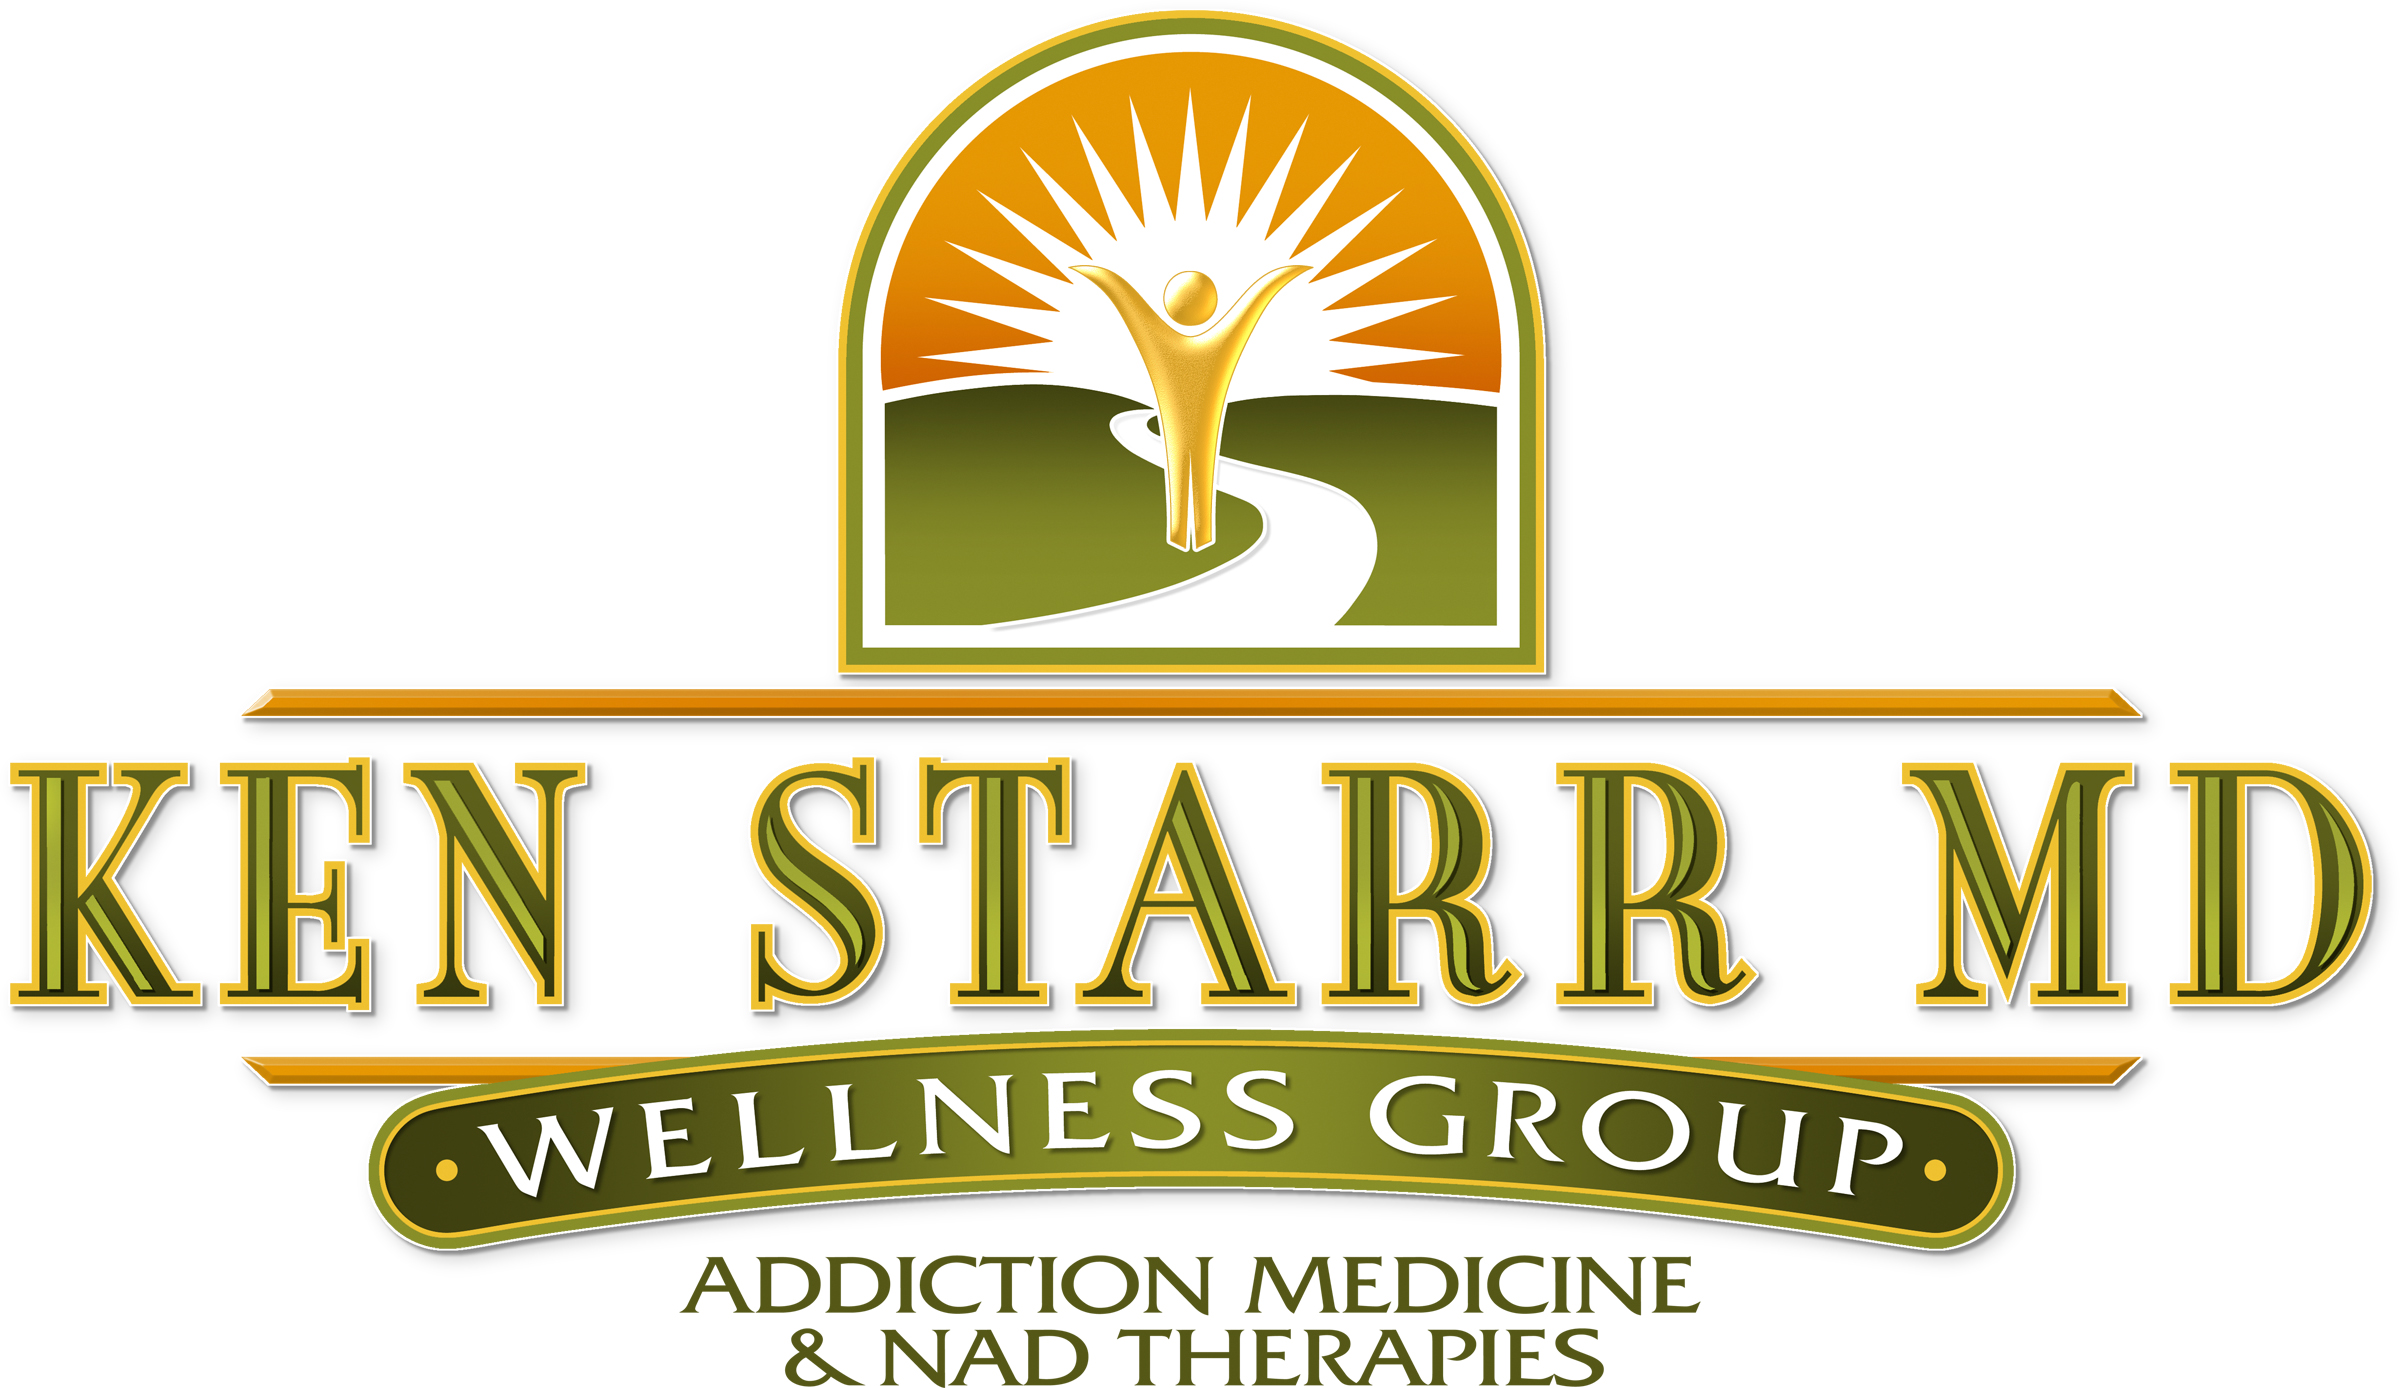 Ken Starr MD Wellness Group